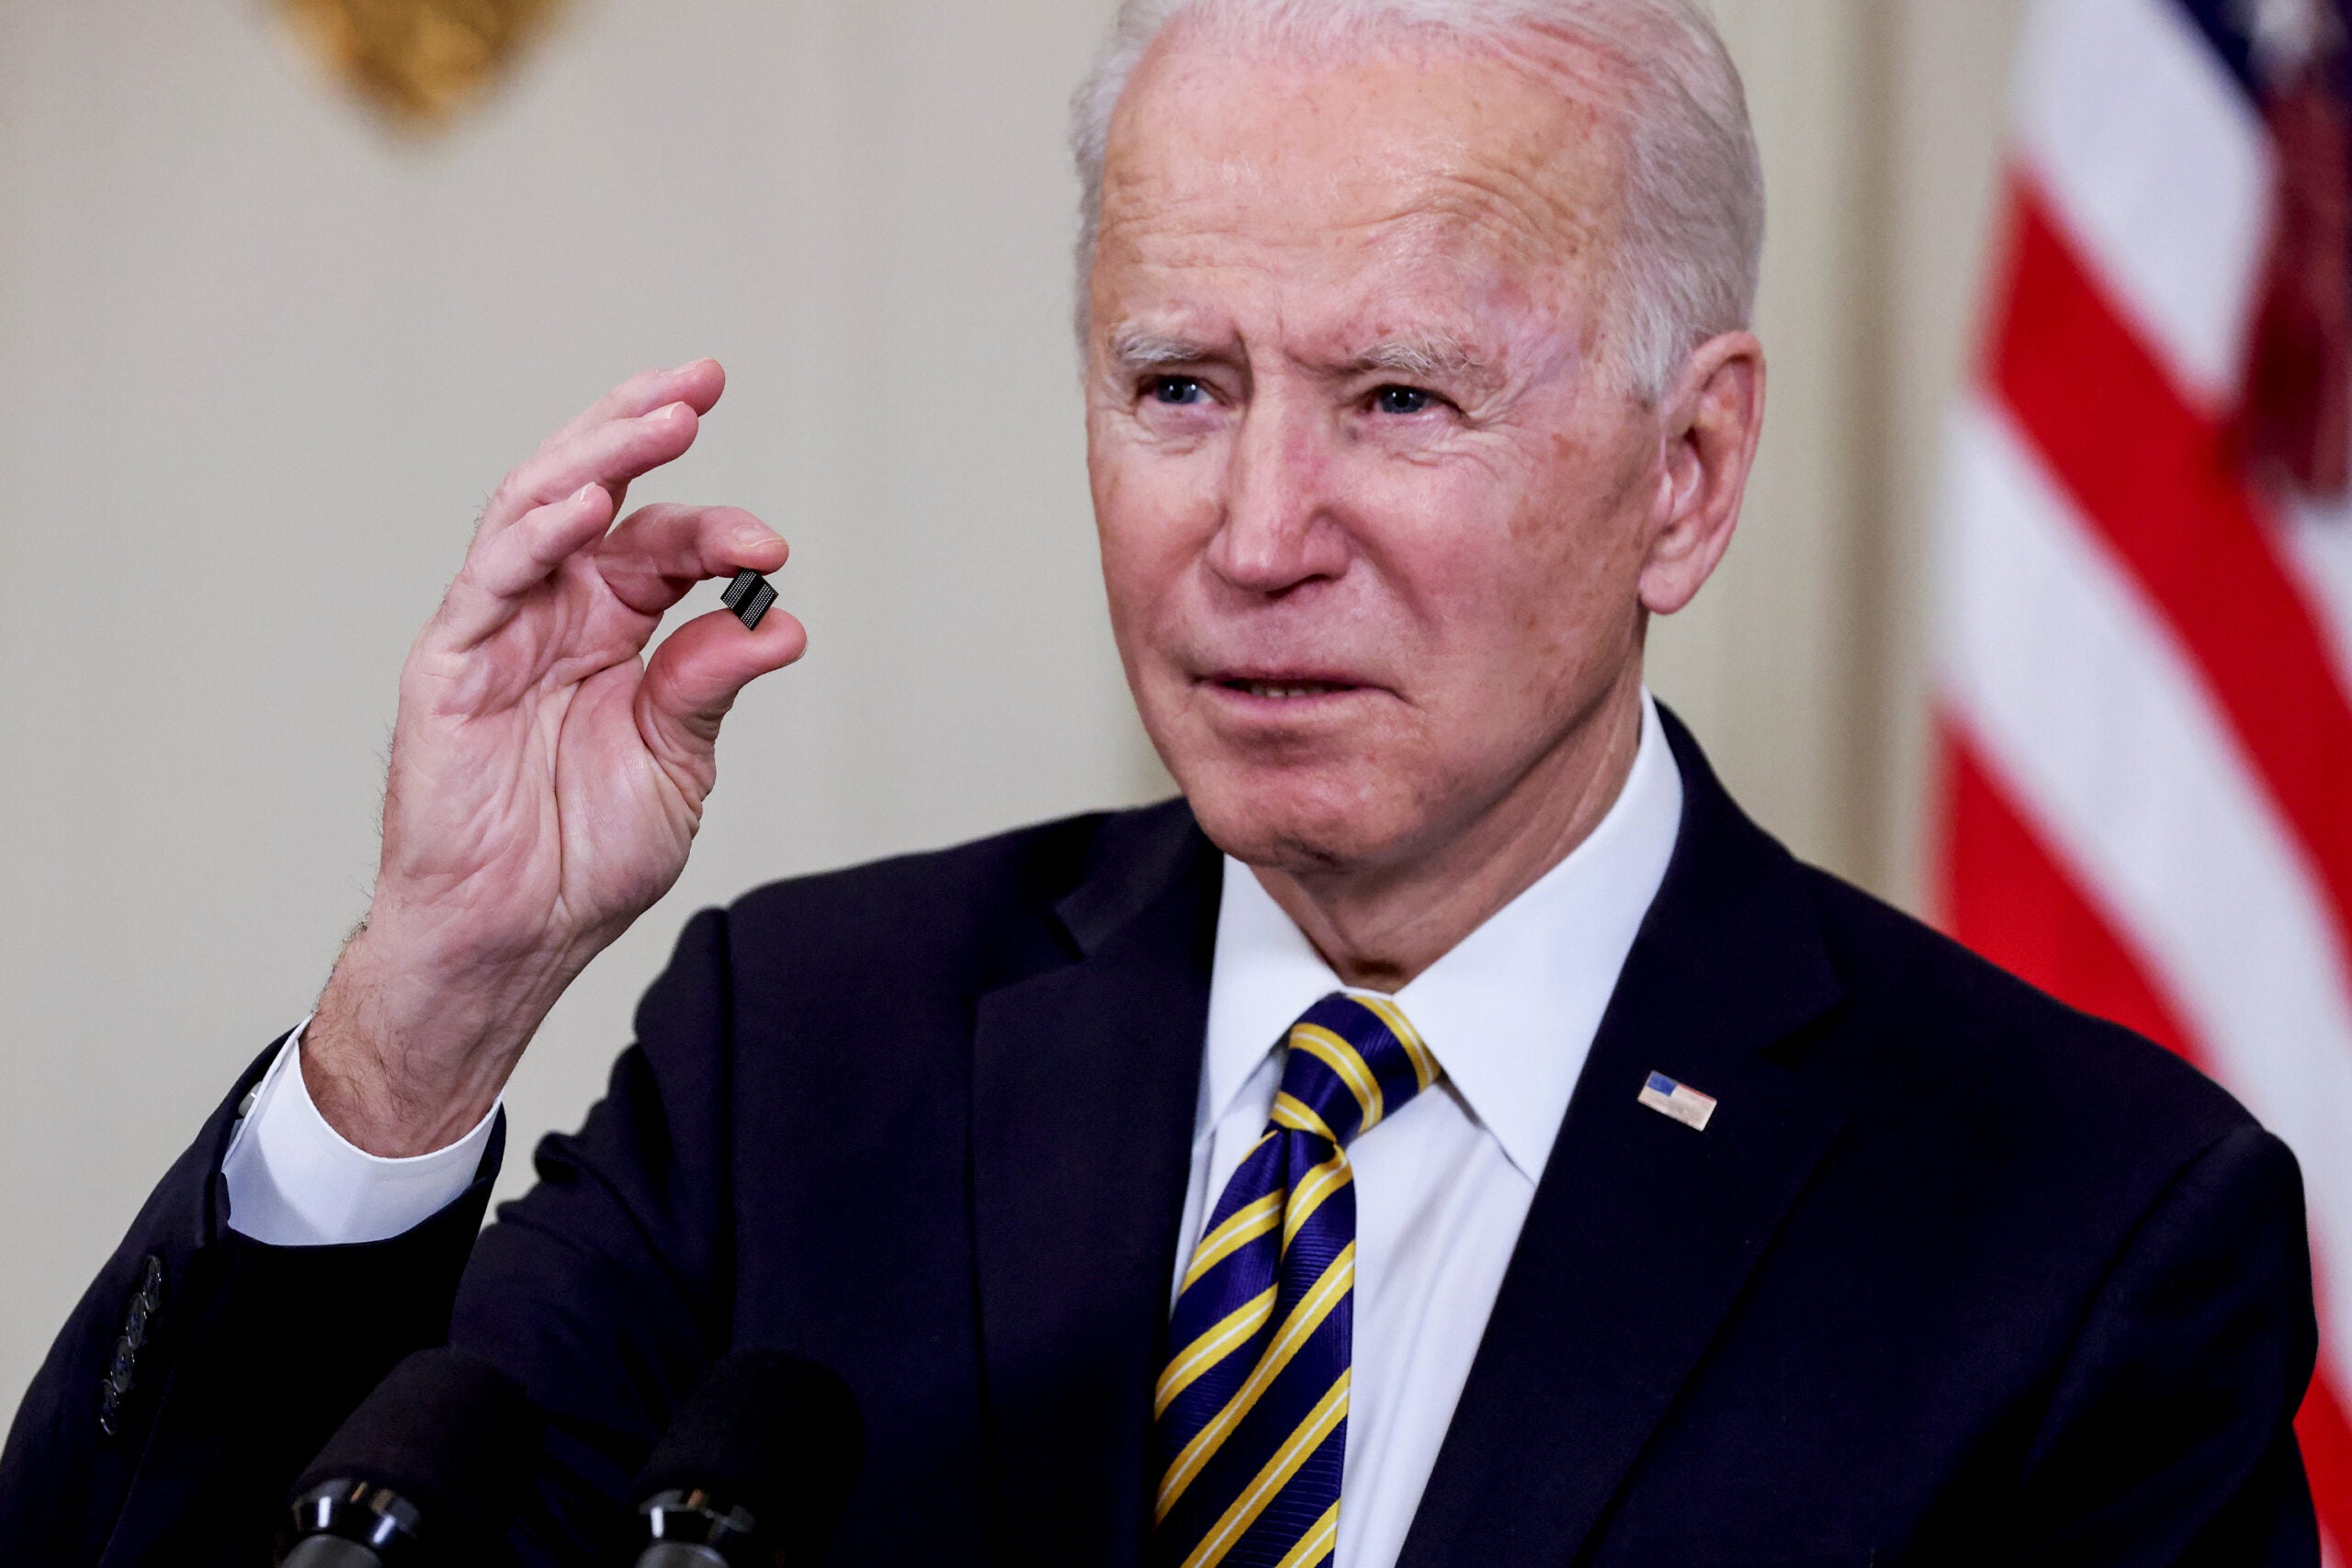 Joe Biden crushes Xi Jinping's precious semiconductor ambitions